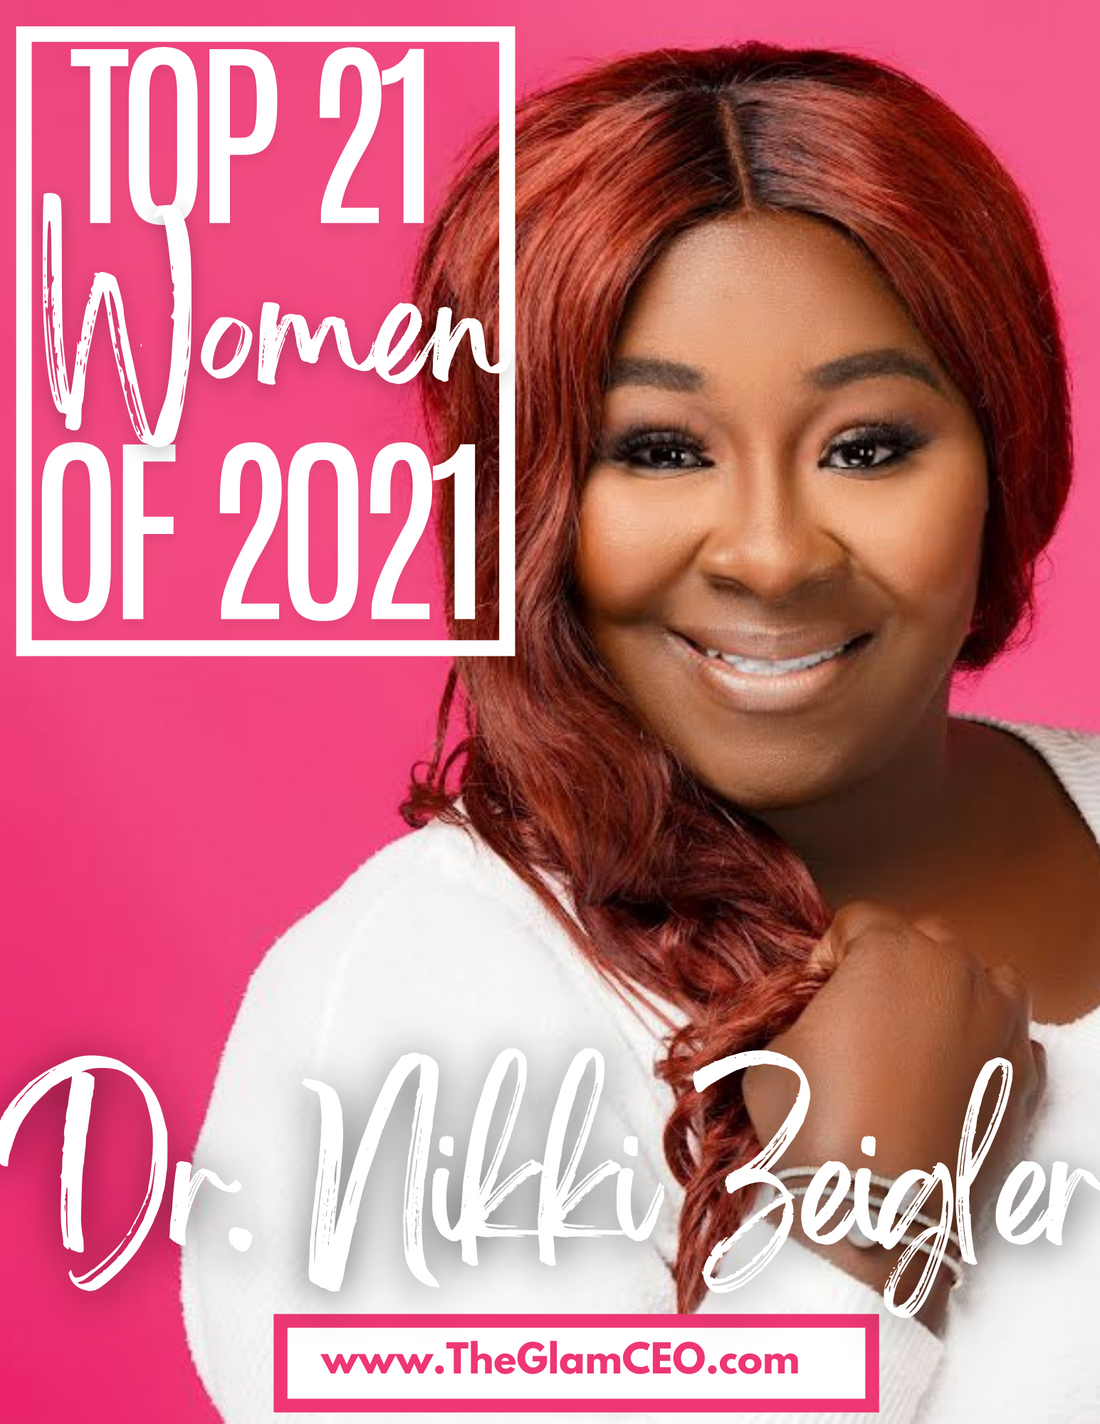 Top 21 Women of 2021:  Dr. Nikki Zeigler